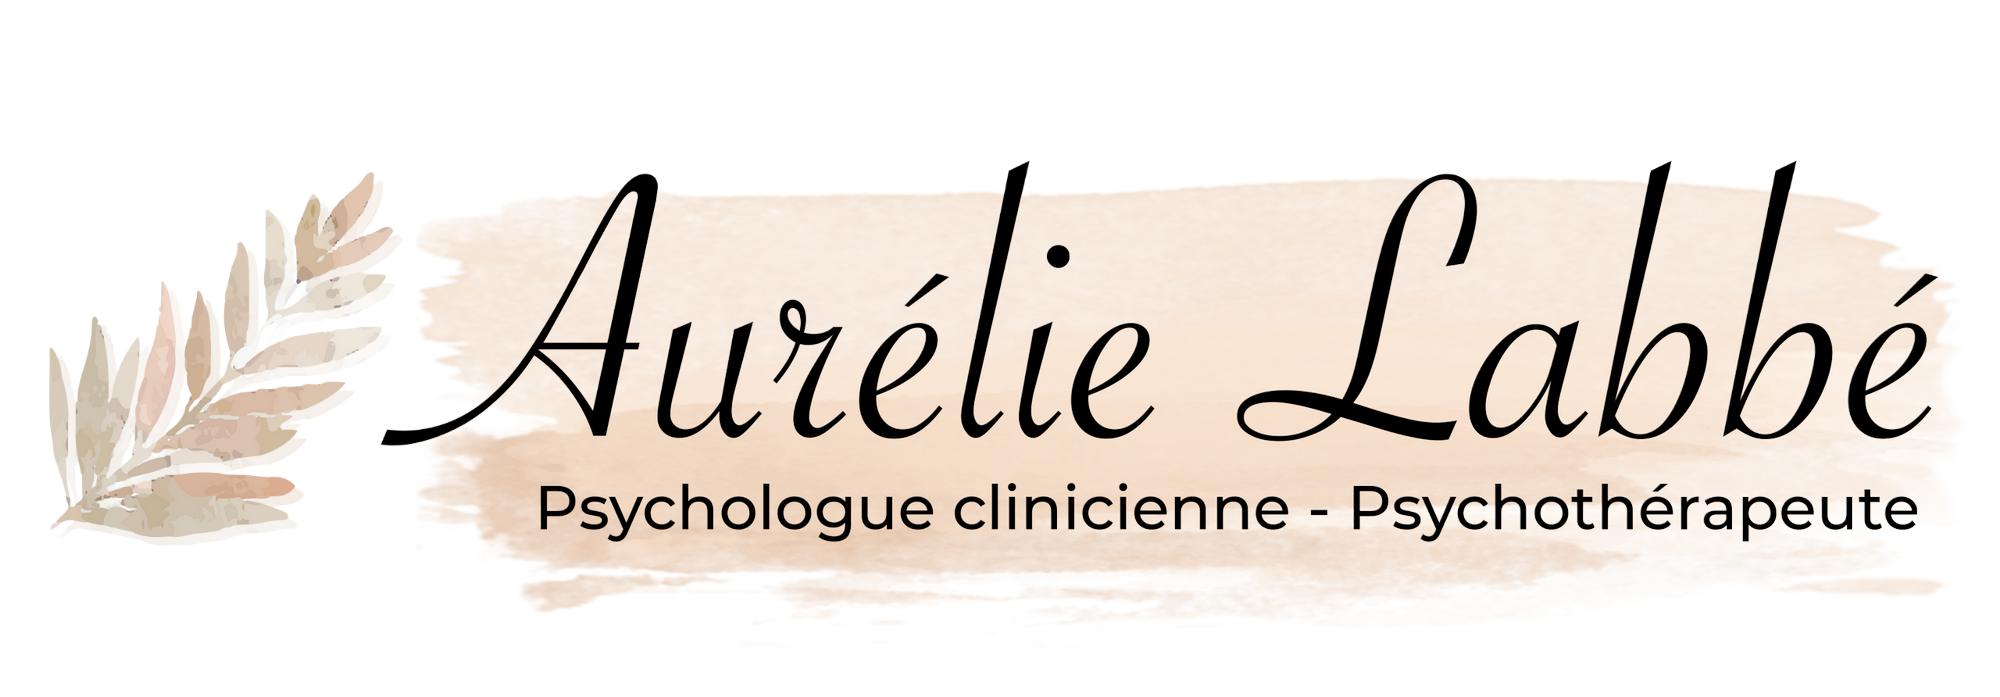 Aurélie Labbé Psychologue clinicienne Psychothérapeute